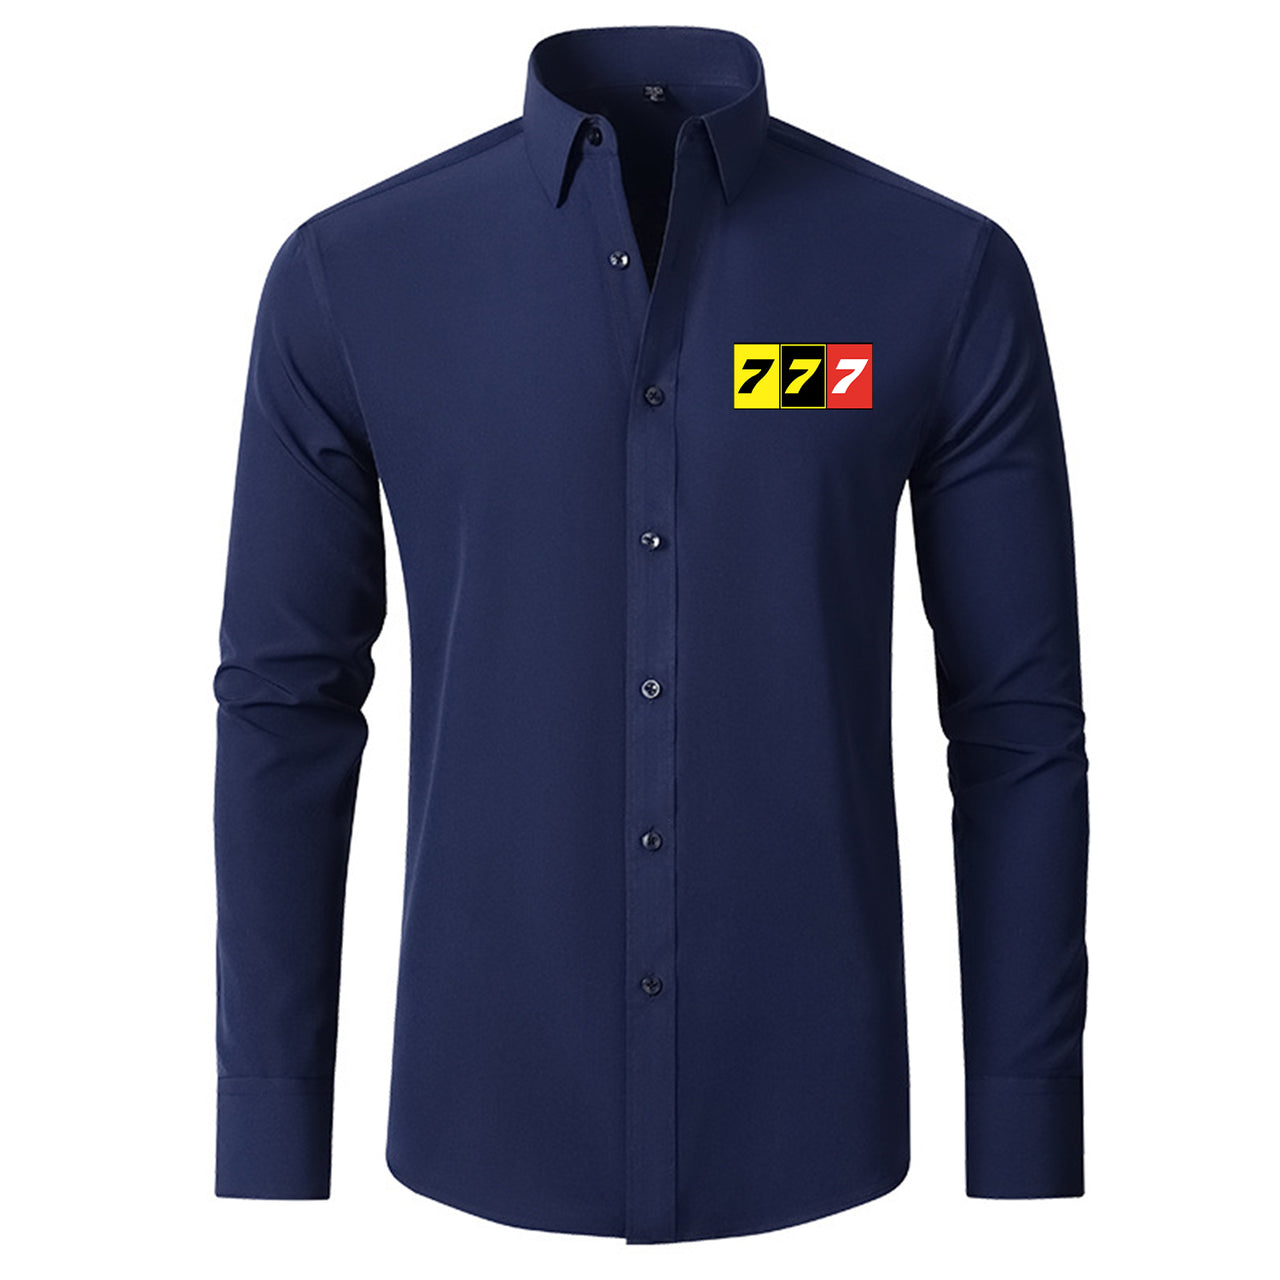 Flat Colourful 777 Designed Long Sleeve Shirts